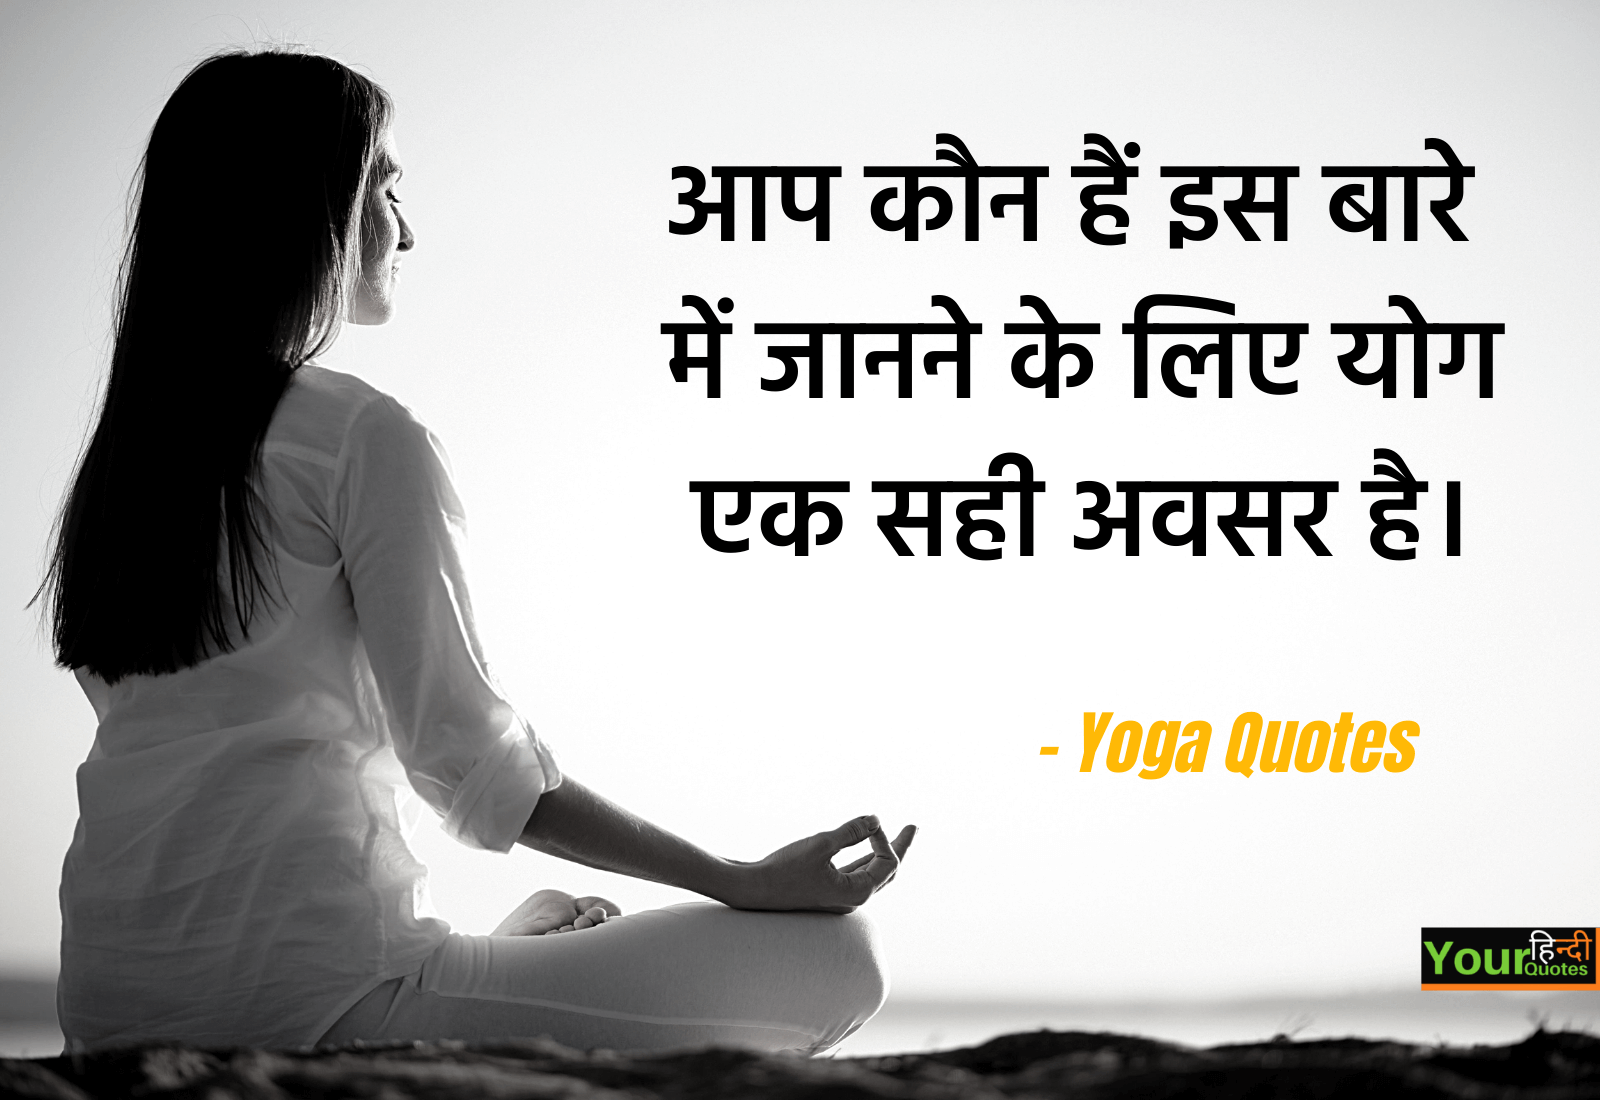 Yoga Quotes in Hindi: योग पर सर्वश्रेष्ठ अनमोल विचार हिंदी में..!